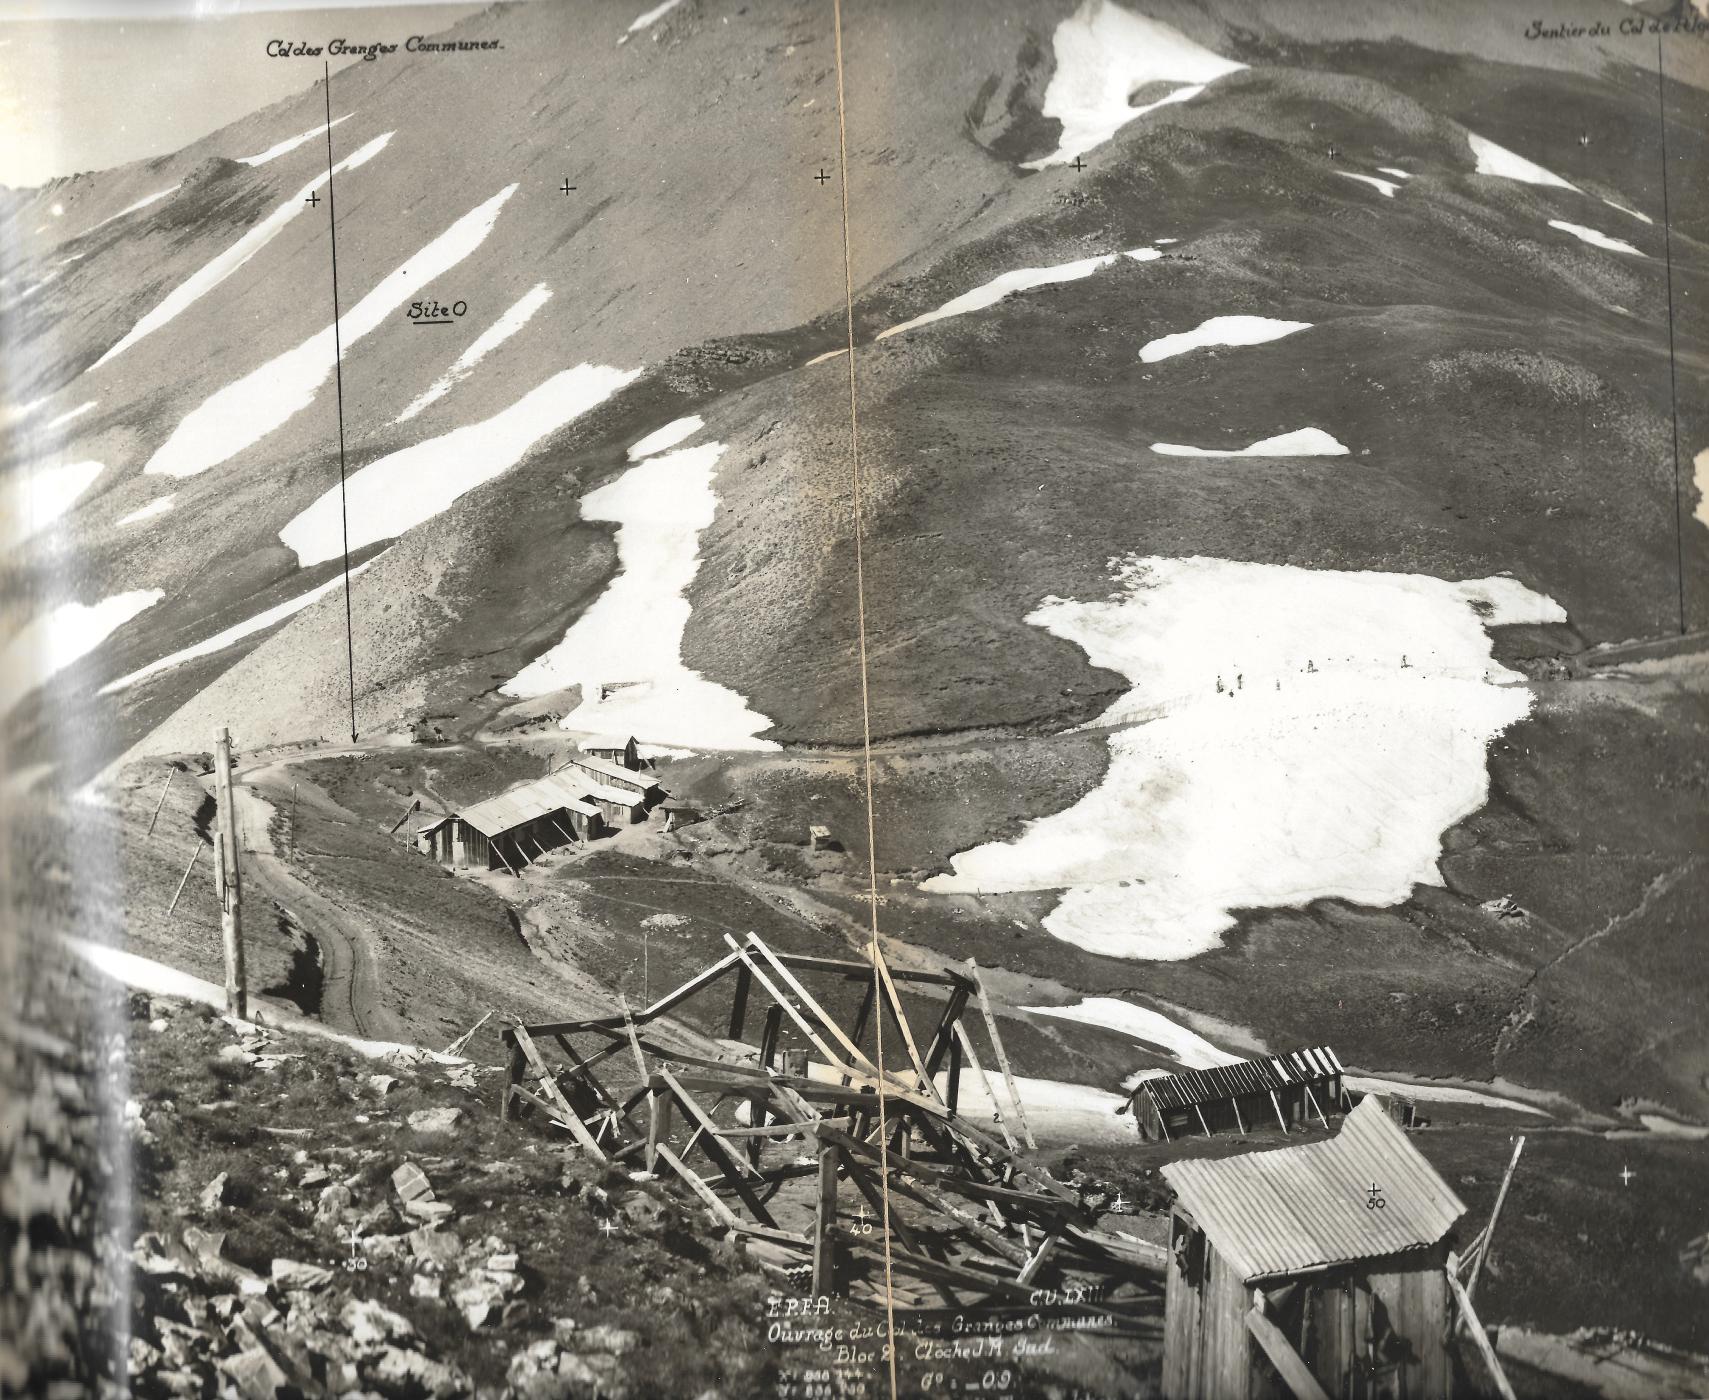 Ligne Maginot - GRANGES COMMUNES - (Ouvrage d'infanterie) - Photo du chantier en 1937, prise du sommet de l'ouvrage vers le col de Granges Communes